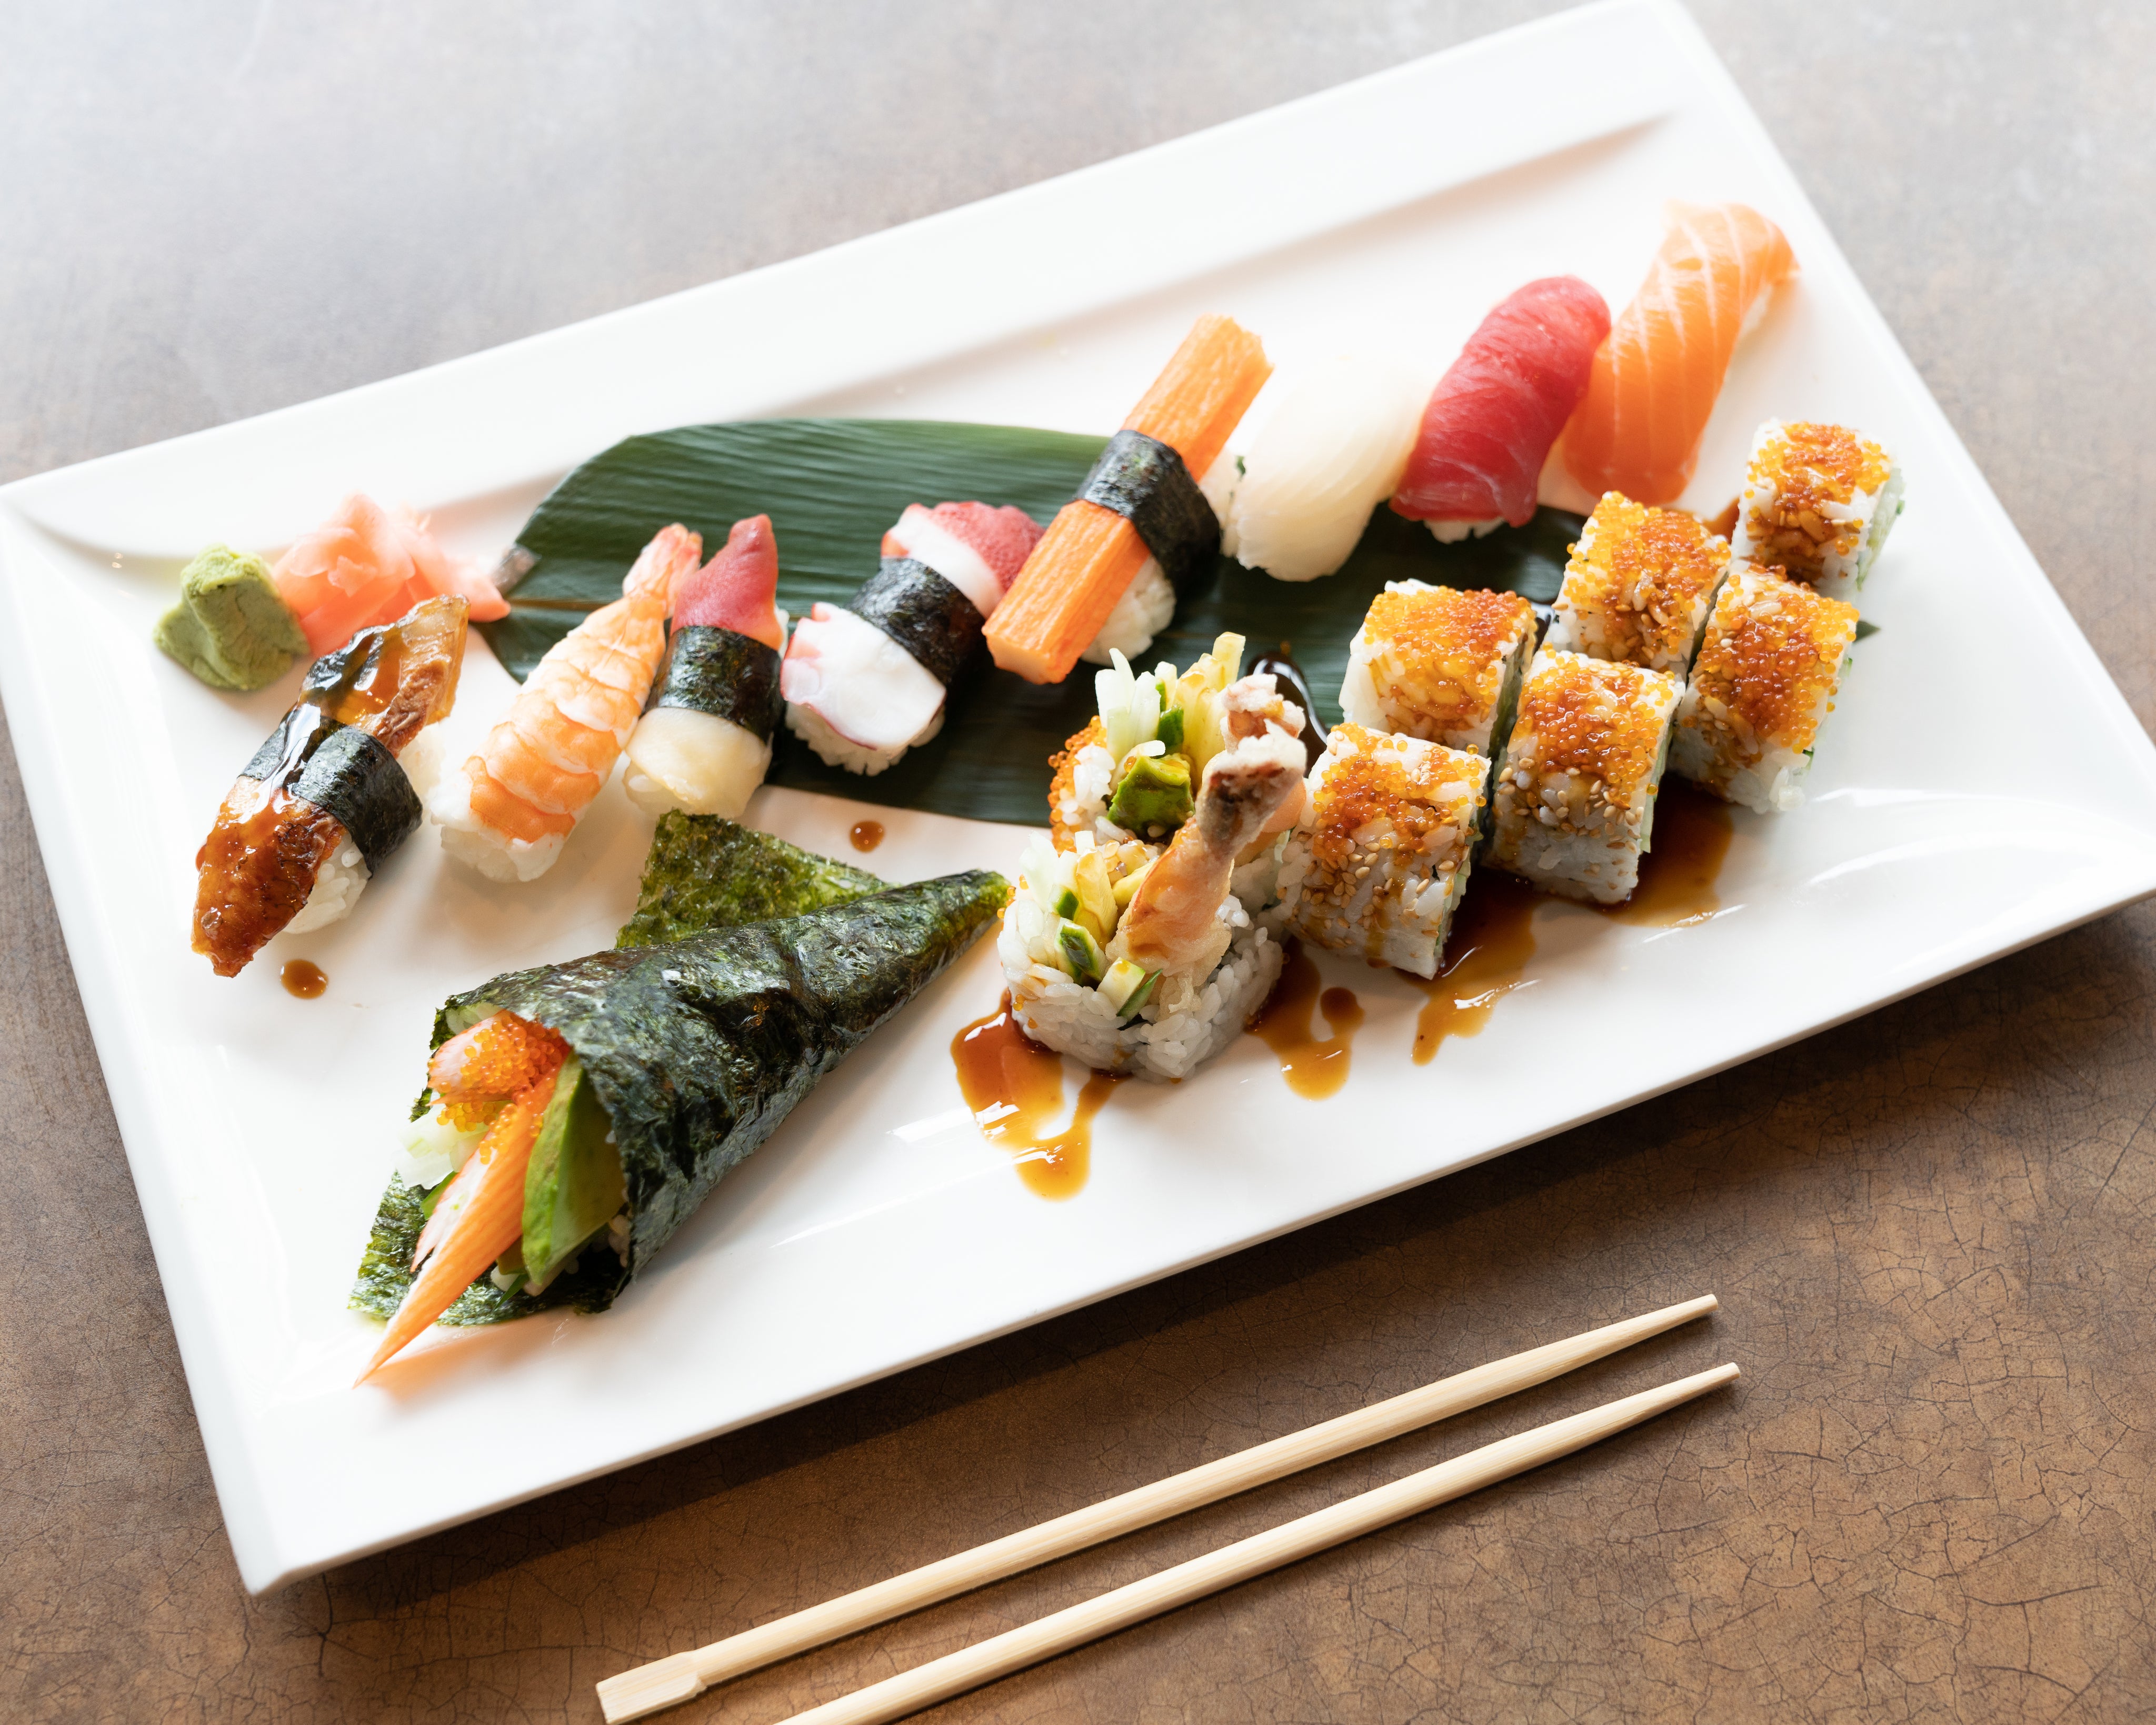 fresh-sushi-rolls-on-white-plate.jpg